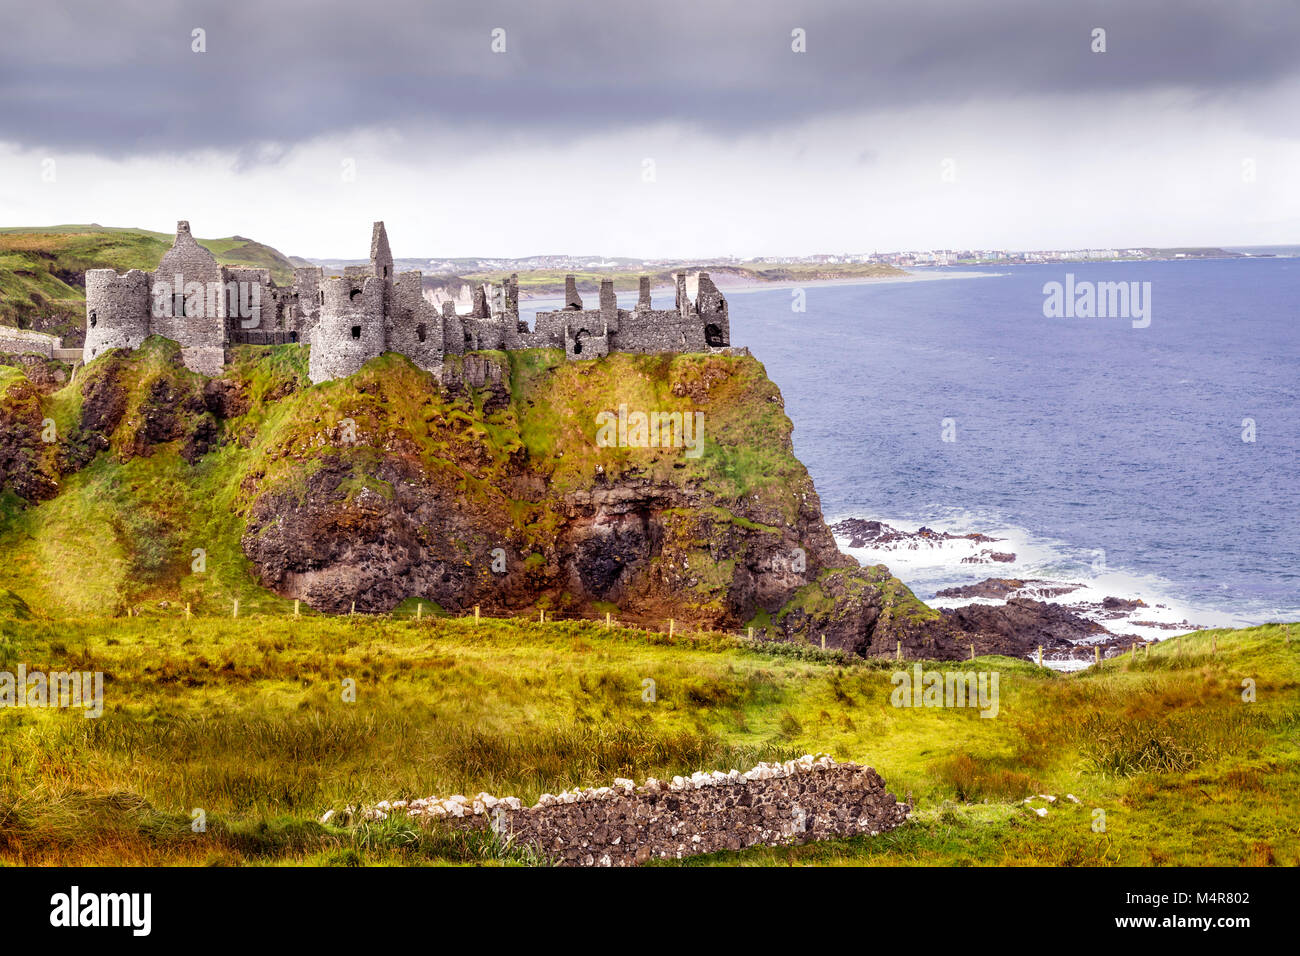 Castillo de Dunluce es un viejo castillo abandonado en la hermosa costa del norte de Irlanda, cerca de la calzada Gigante geológico Foto de stock